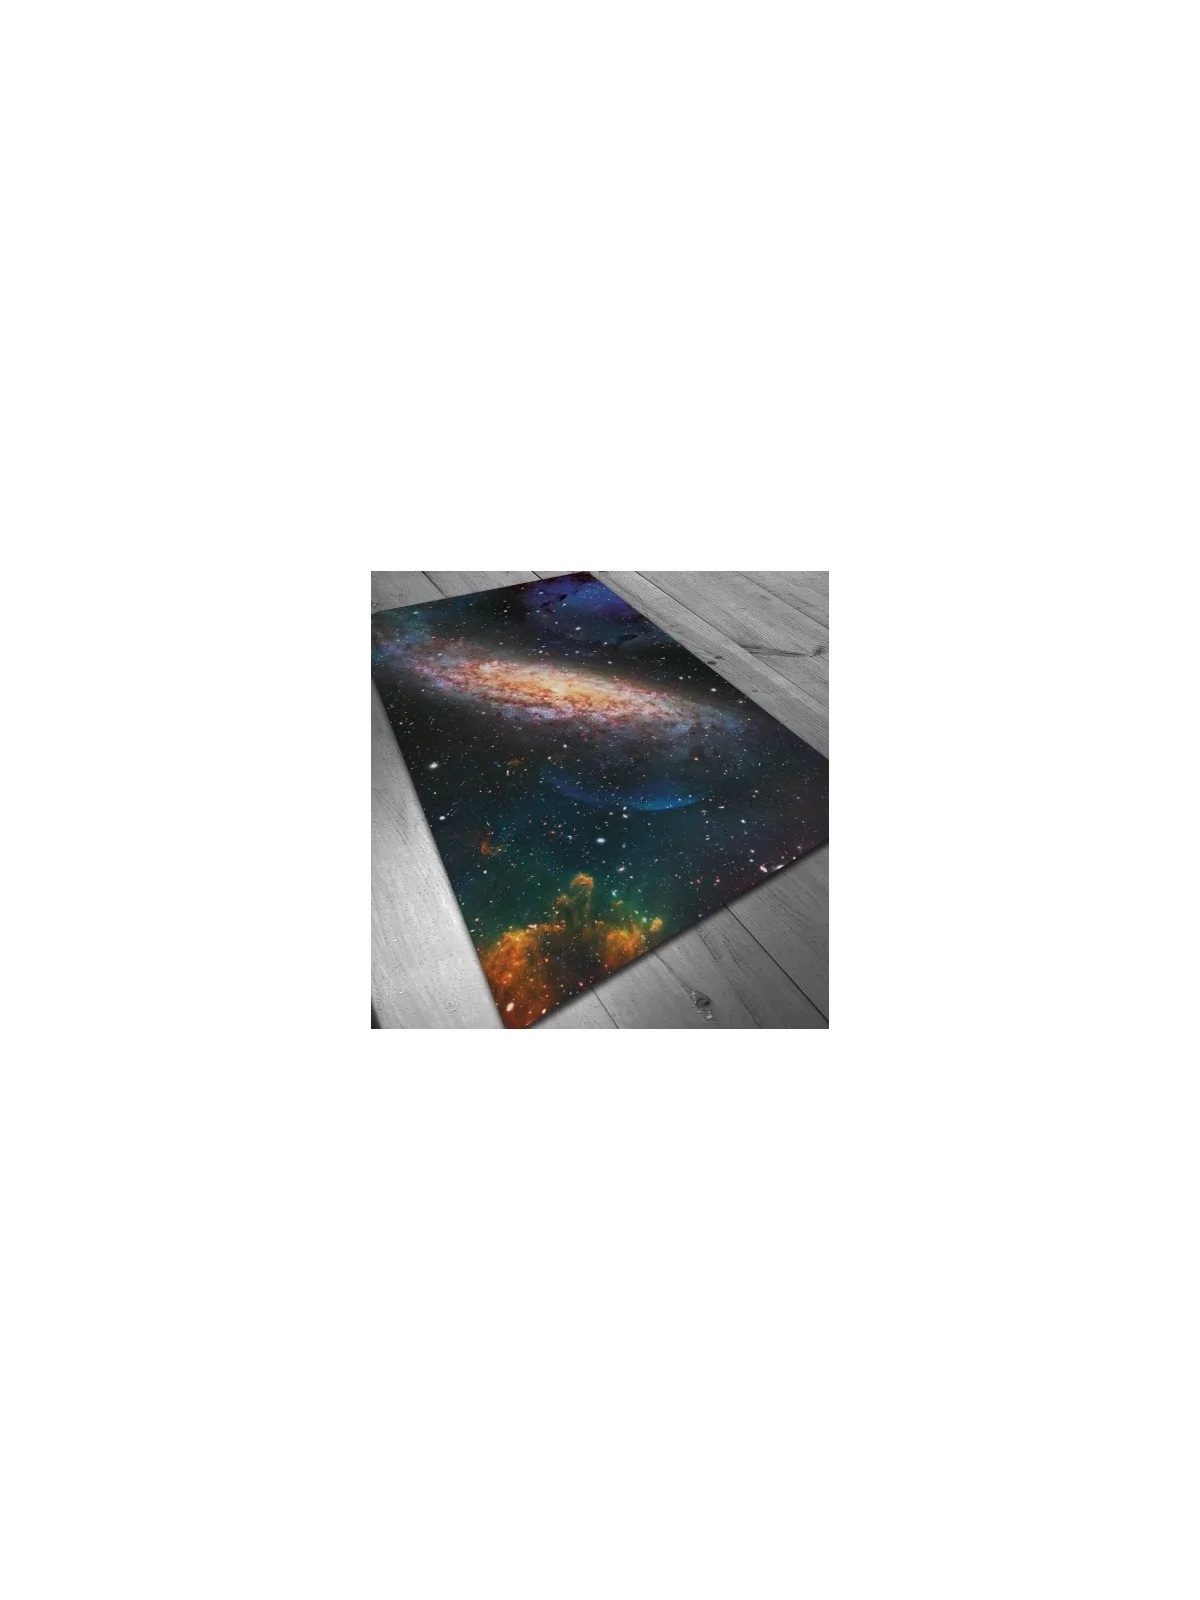 Comprar Tapete de Neopreno 150x90cm - Galaxia barato al mejor precio 4